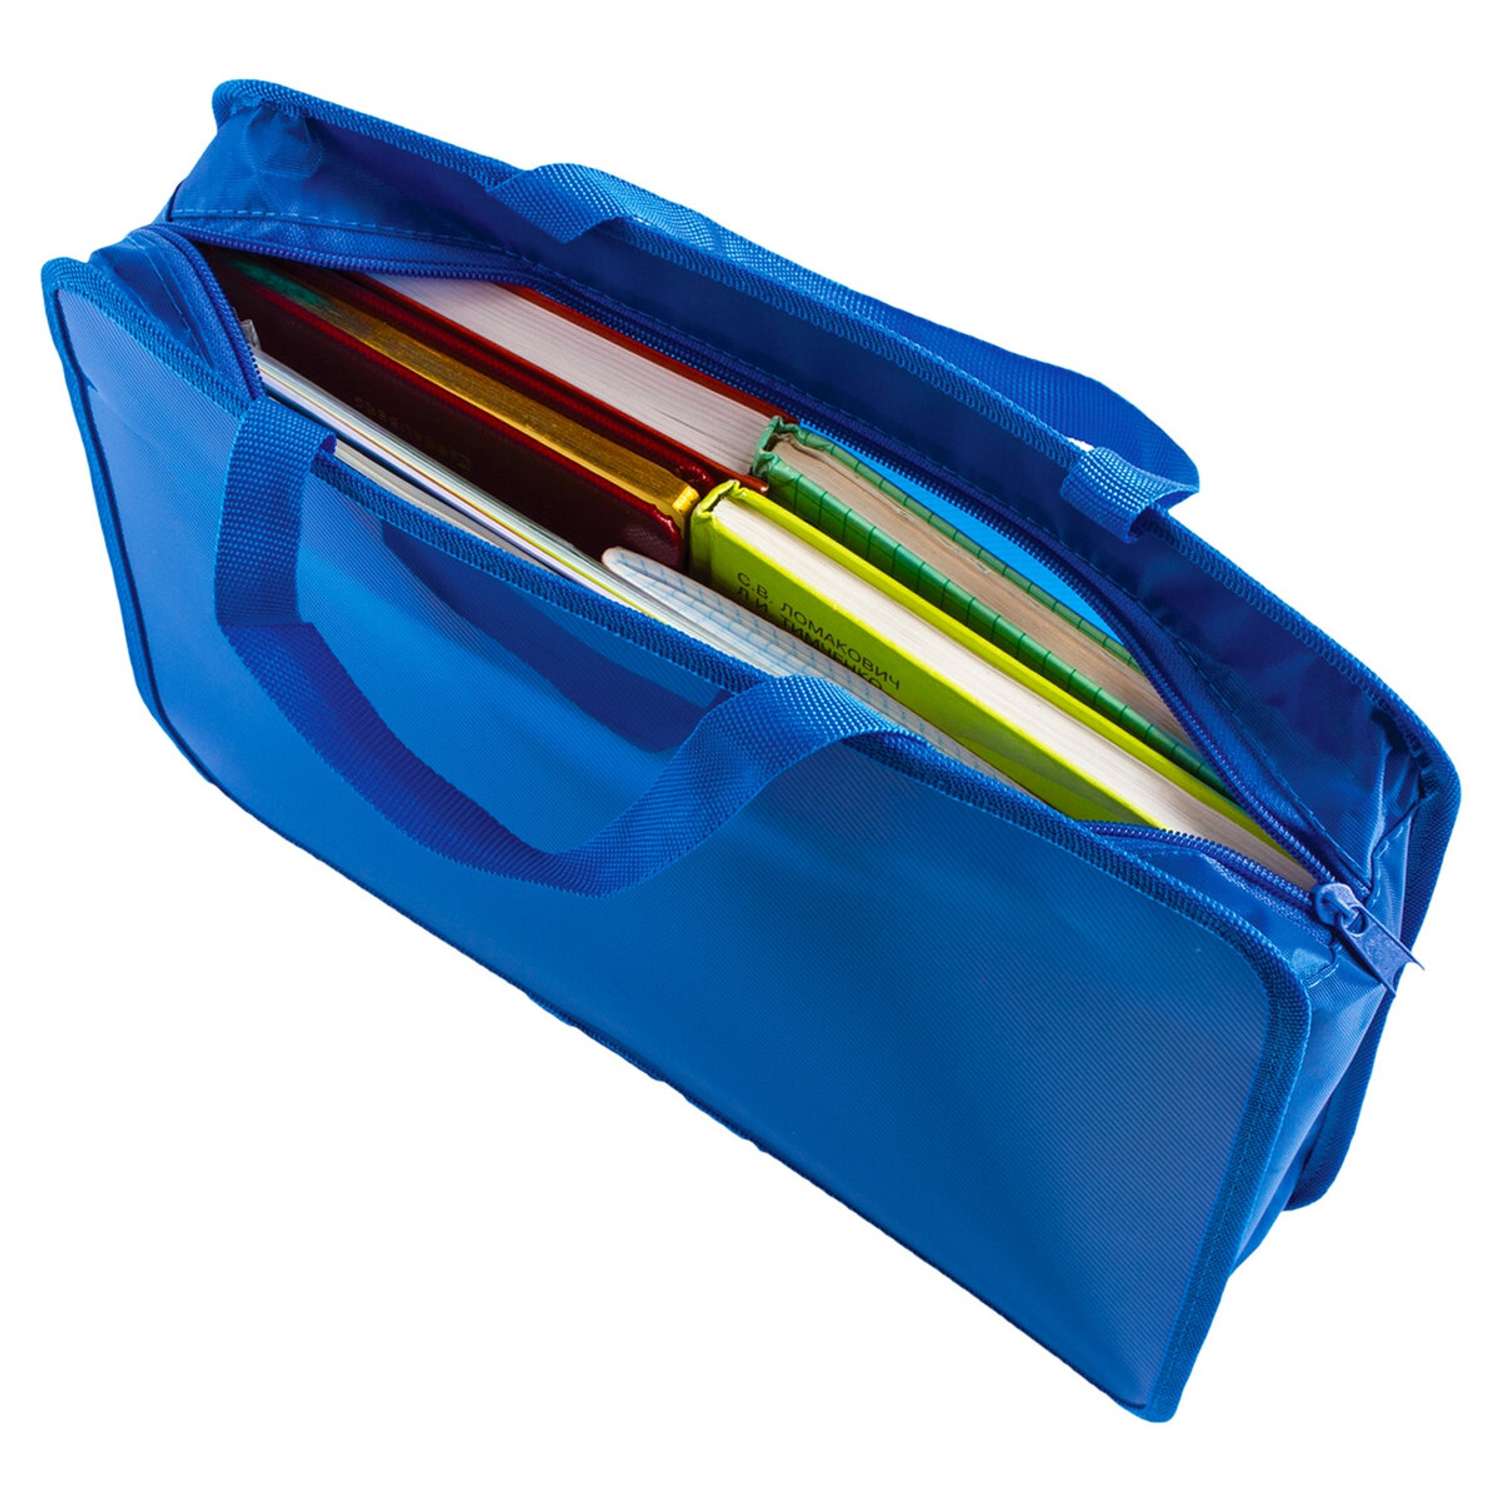 Папка-сумка Пифагор для документов бумаг тетрадей для школы канцелярская с ручками на молнии - фото 8